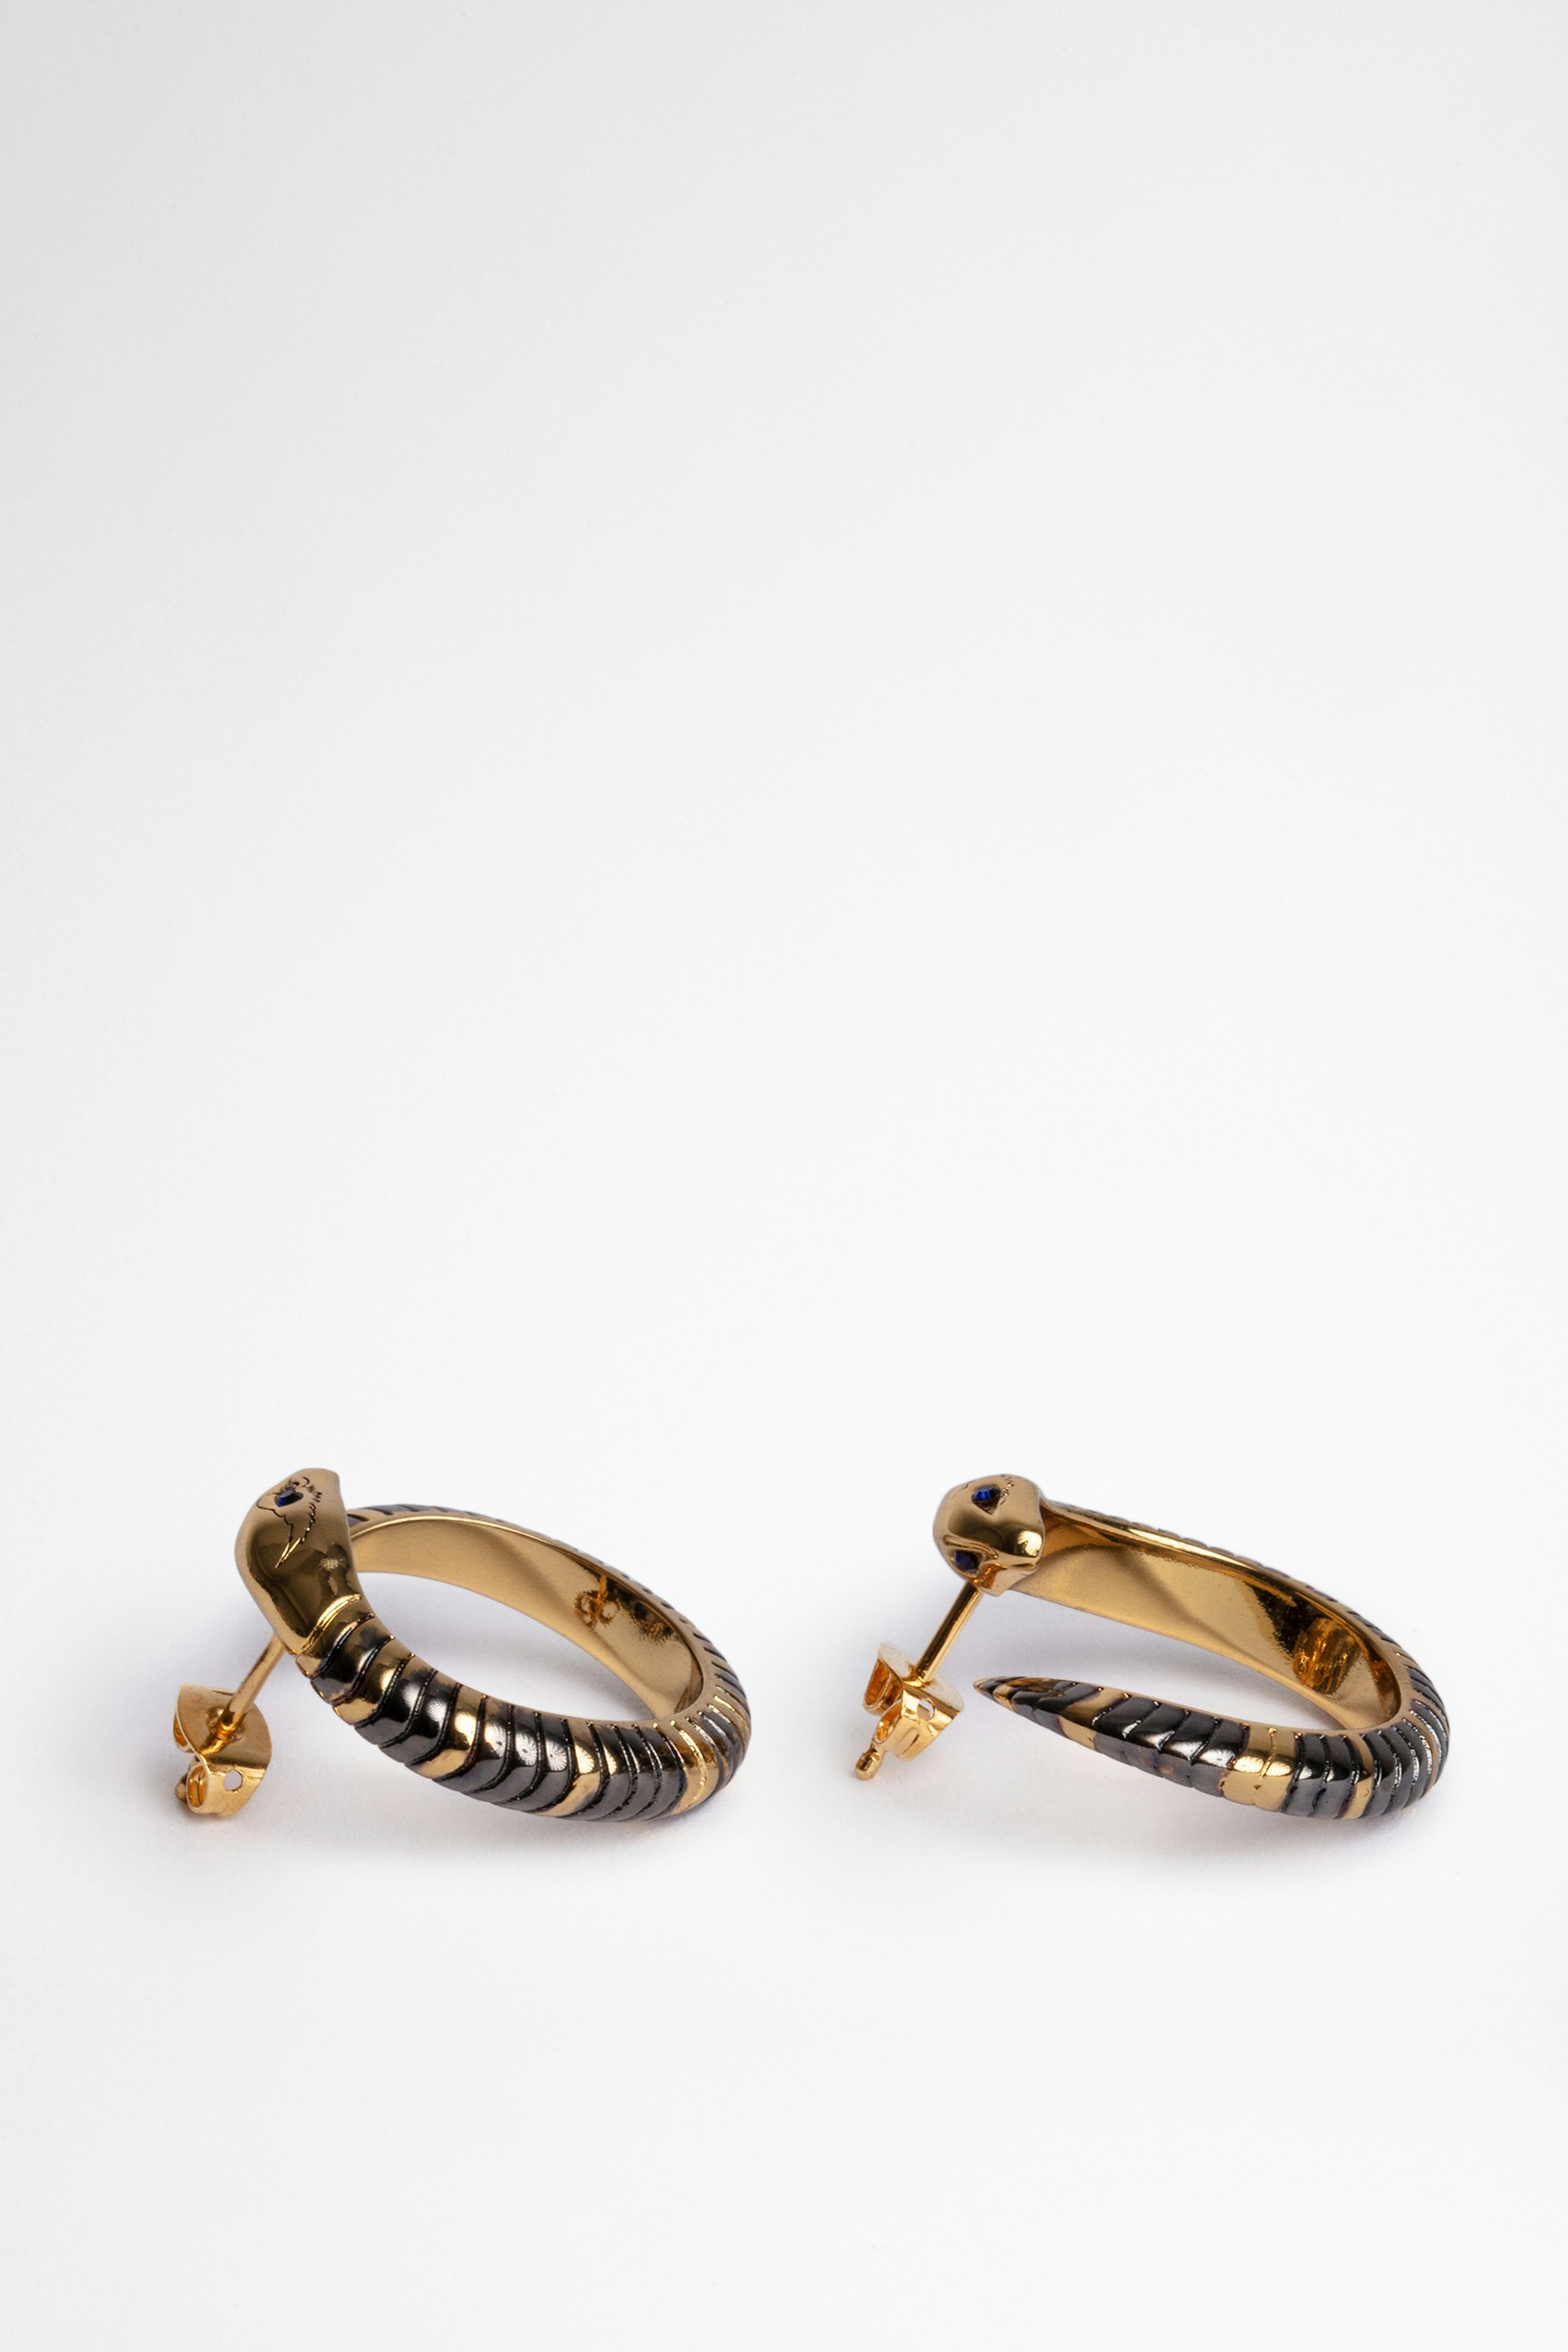 Snake Hoop Earrings - Women's gold-tone brass snake earrings